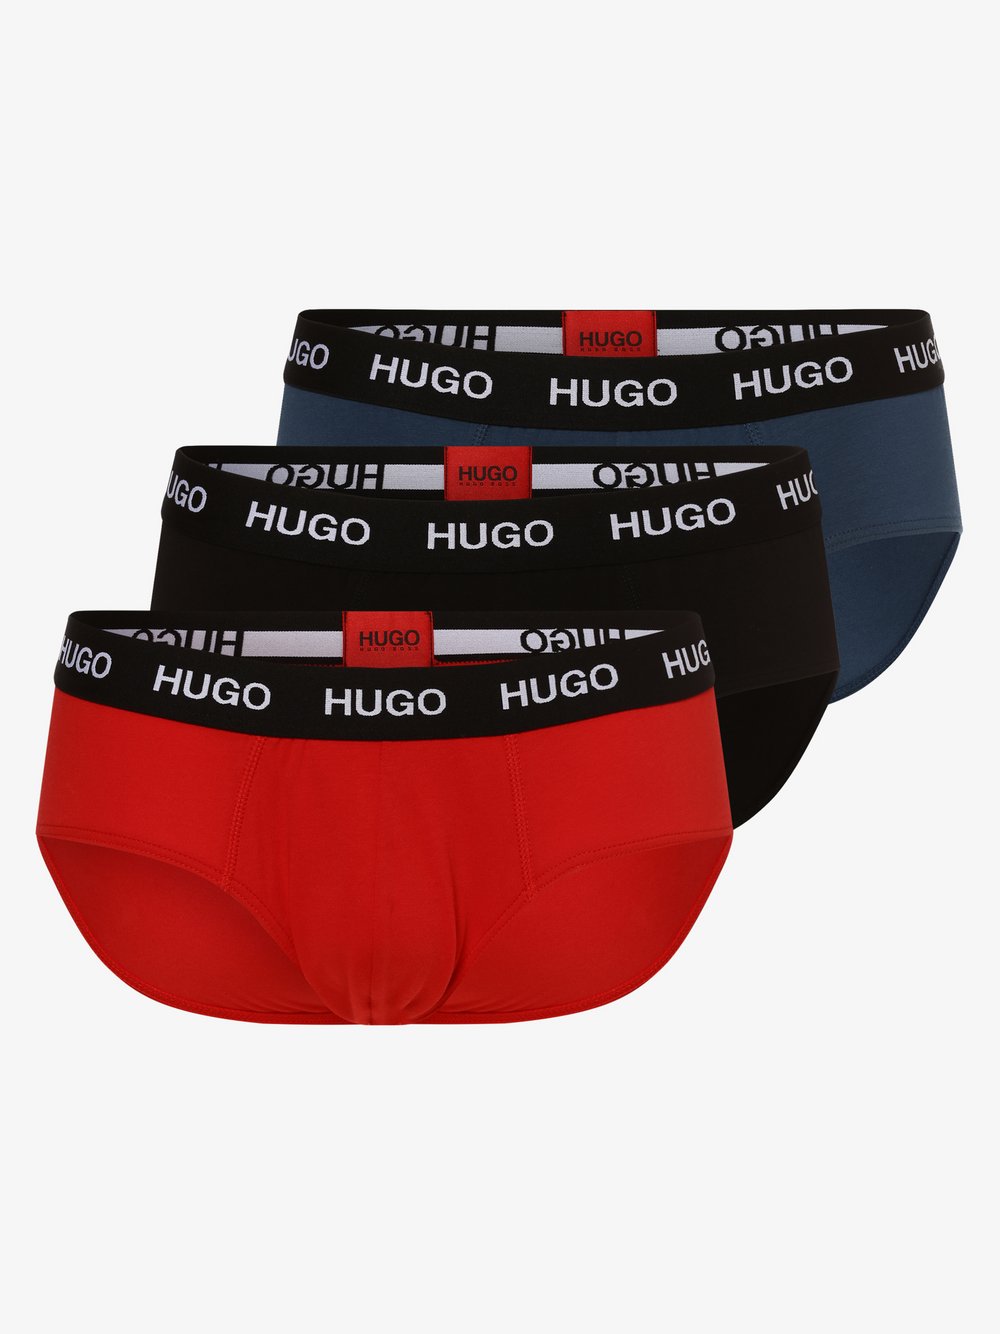 HUGO - Slipy męskie pakowane po 3 szt., czerwony